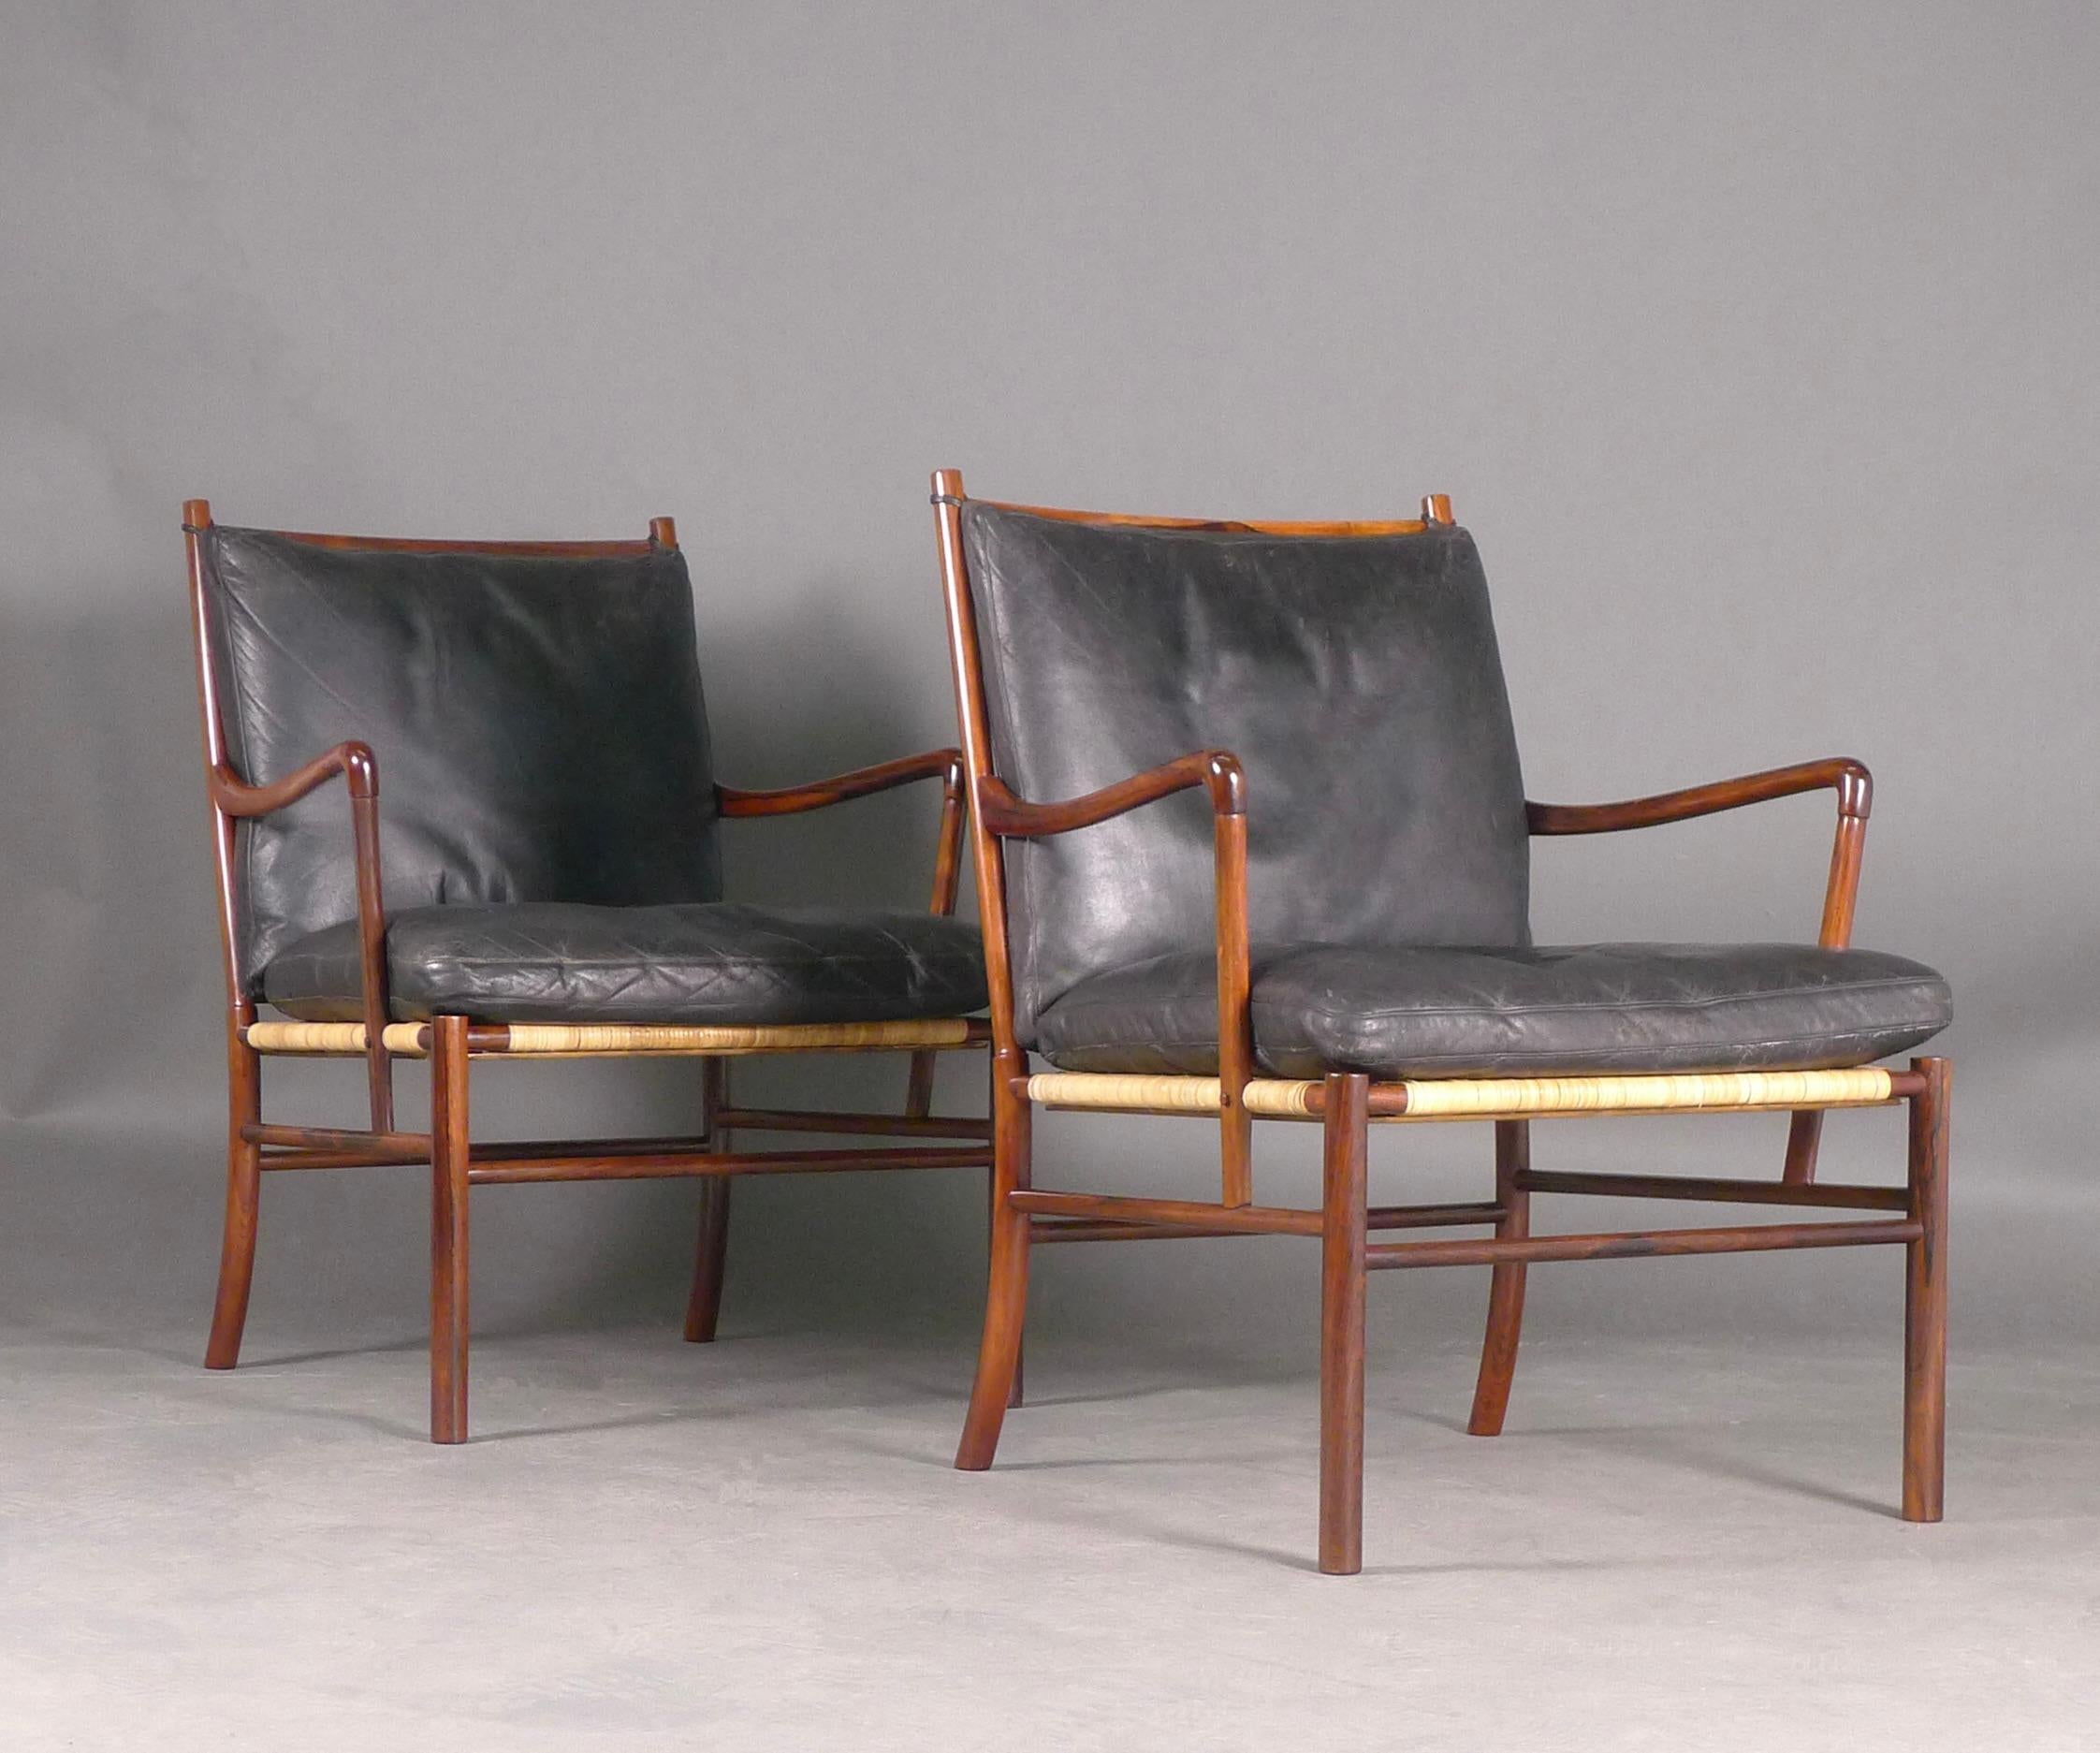 Milieu du XXe siècle Paire de chaises coloniales Ole Wanscher, modèle PJ149, 1ère édition 1949, bois de rose